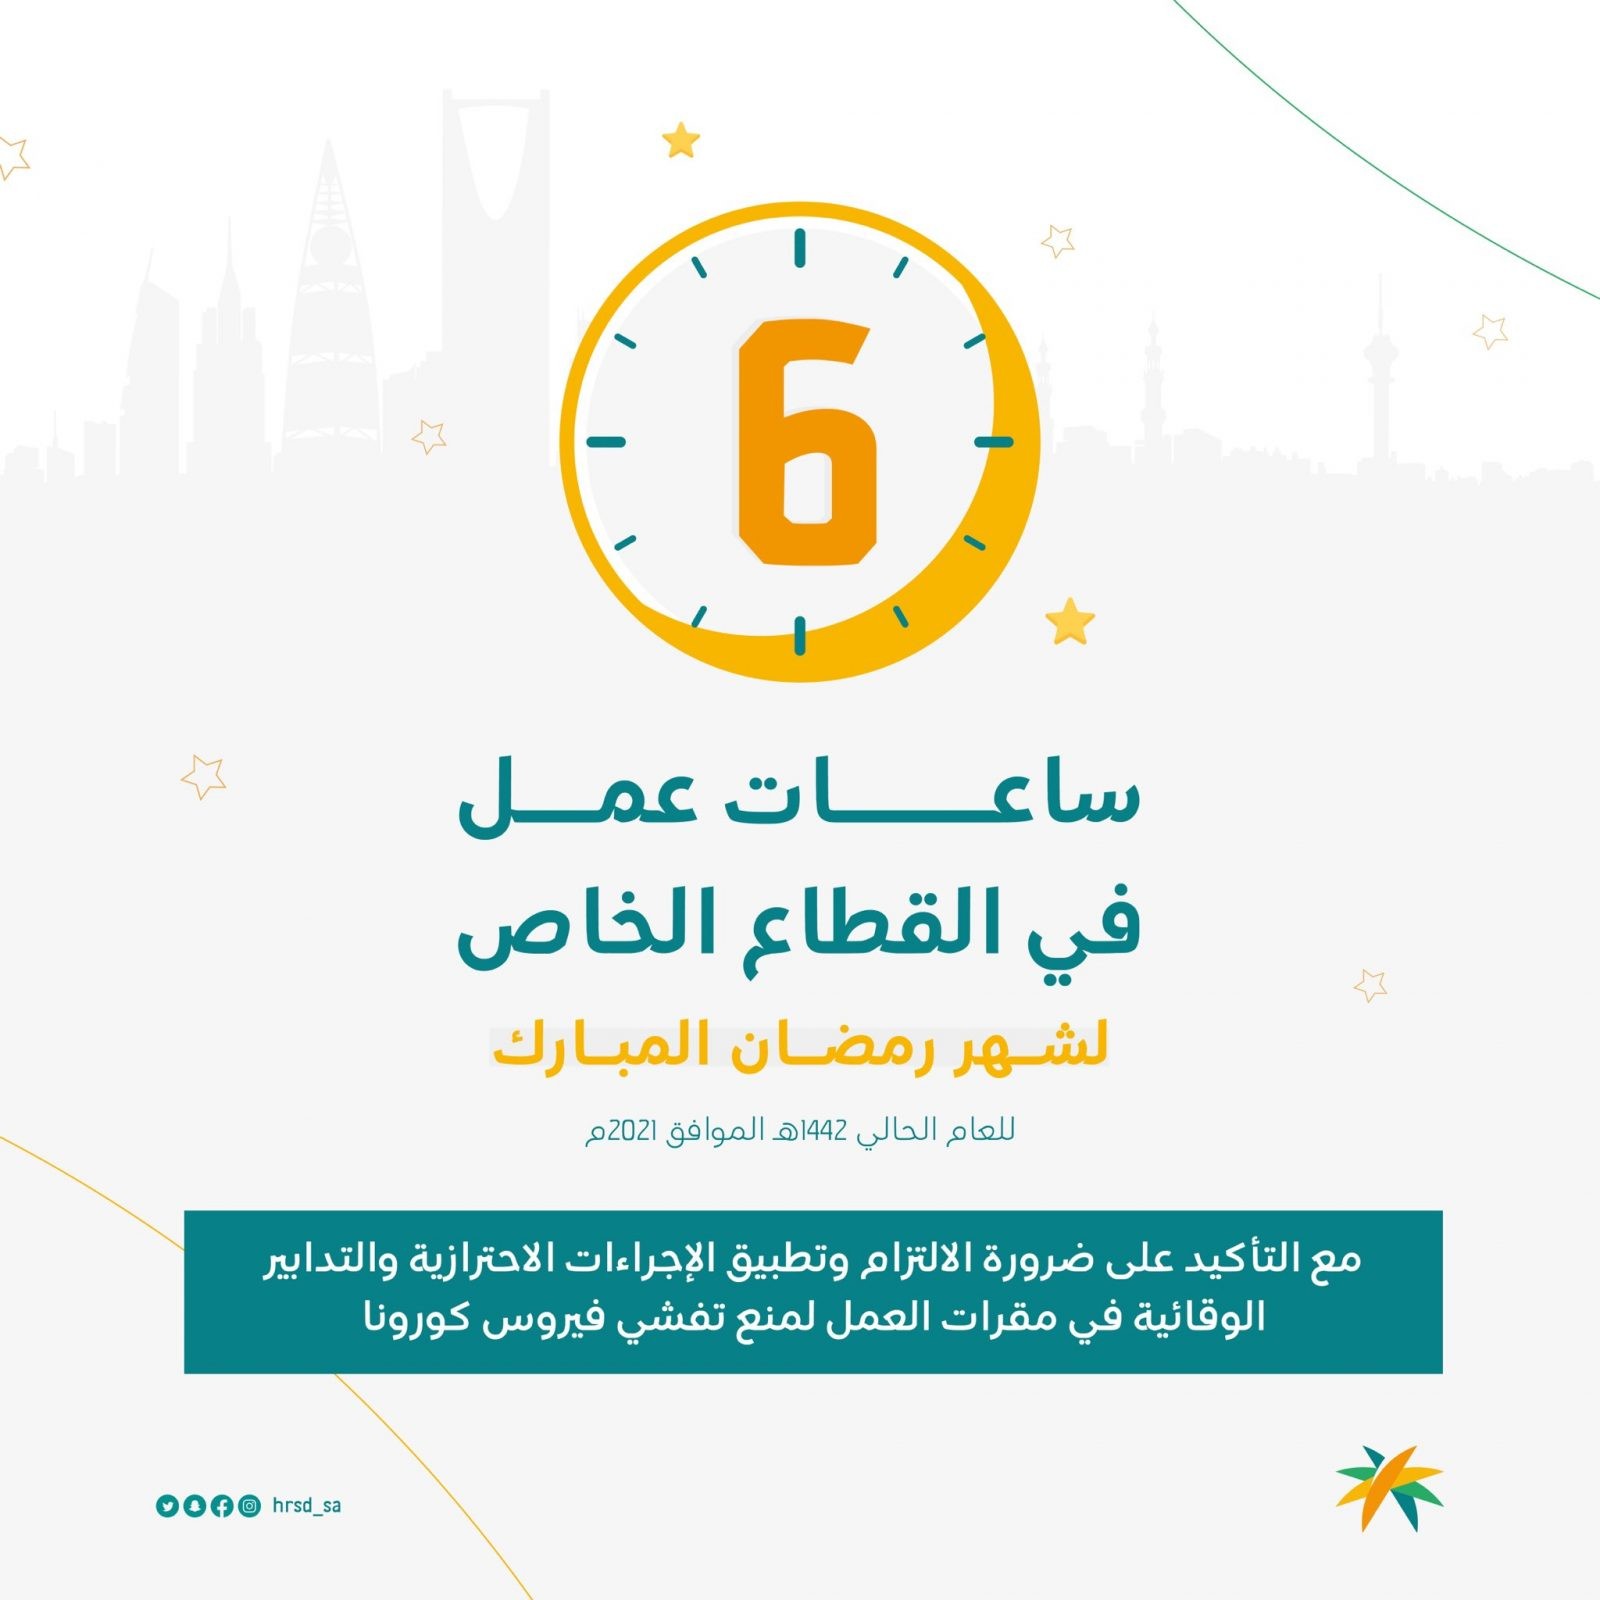 عدد ساعات العمل خلال شهر رمضان